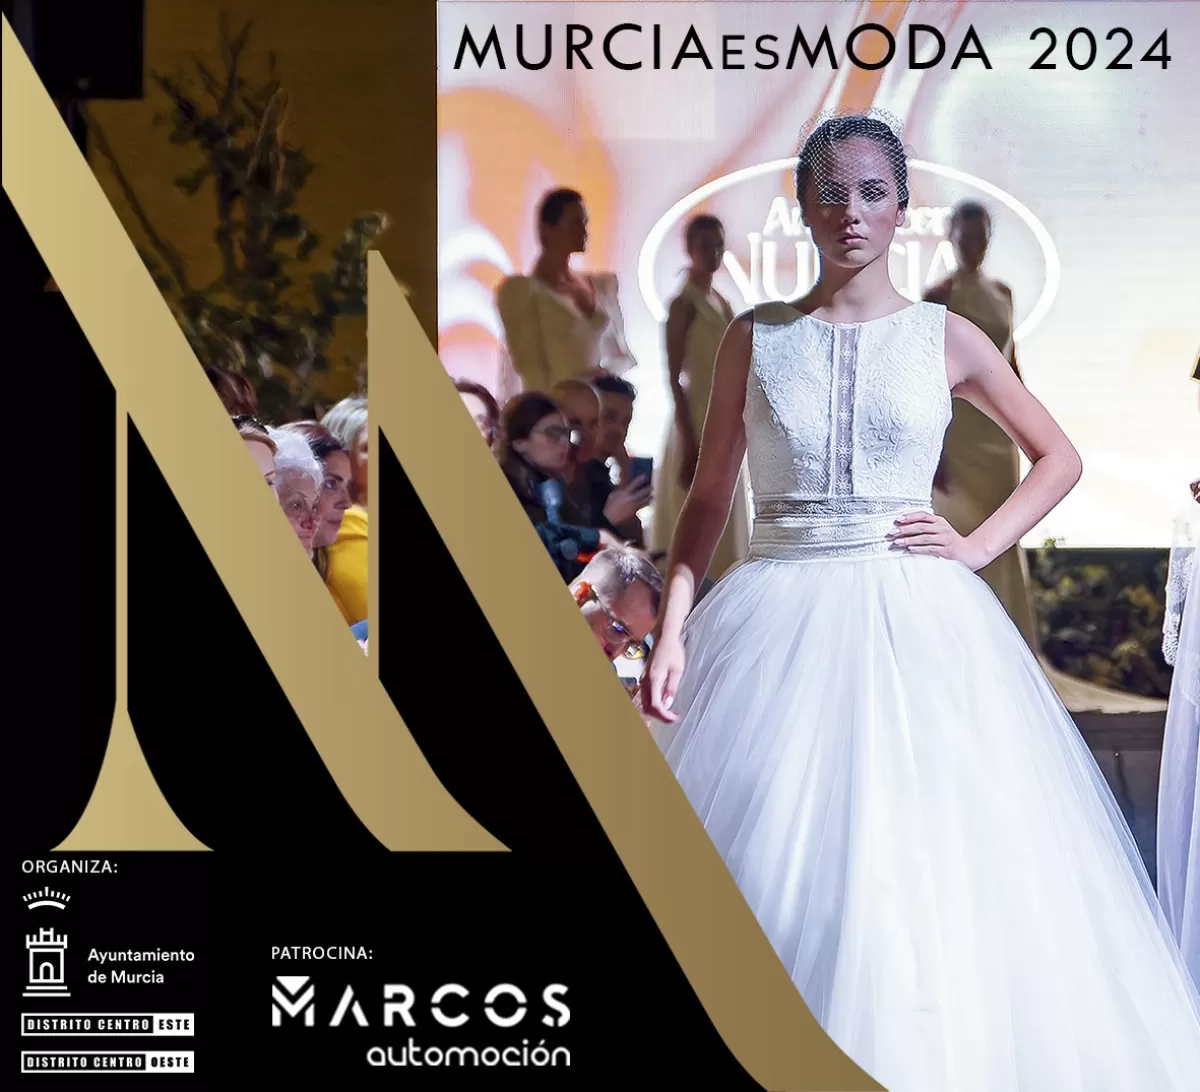 El talento murciano vuelve al Romea de la mano de la IV Edición del certamen Murcia es Moda